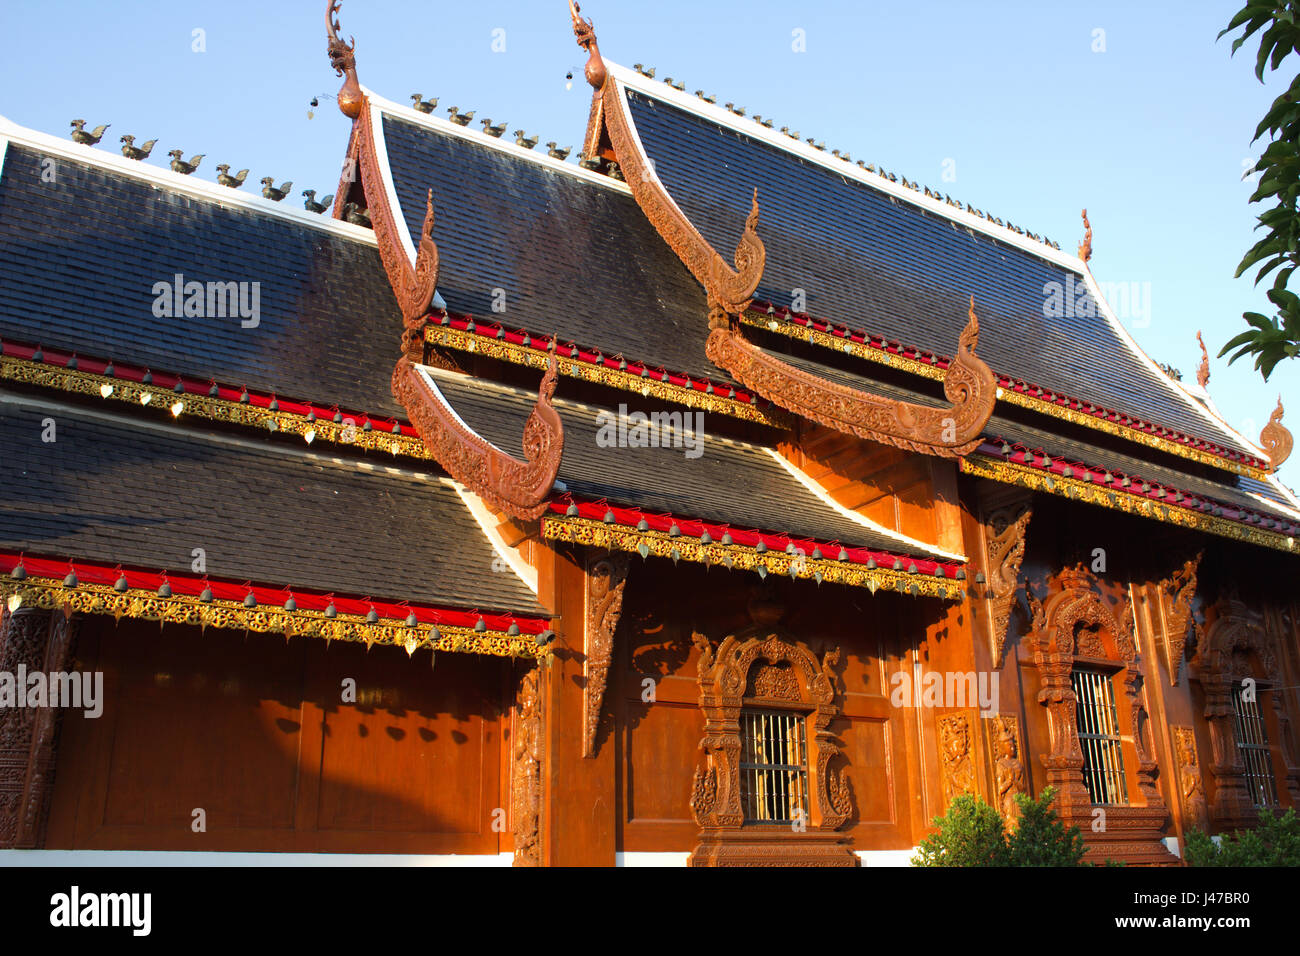 Vue de côté de la magnifique de style Lanna teakwood viharn (sermon hall) au temple bouddhiste de Wat Ban Den, Mae Taeng, Chiang Mai, Thaïlande Banque D'Images